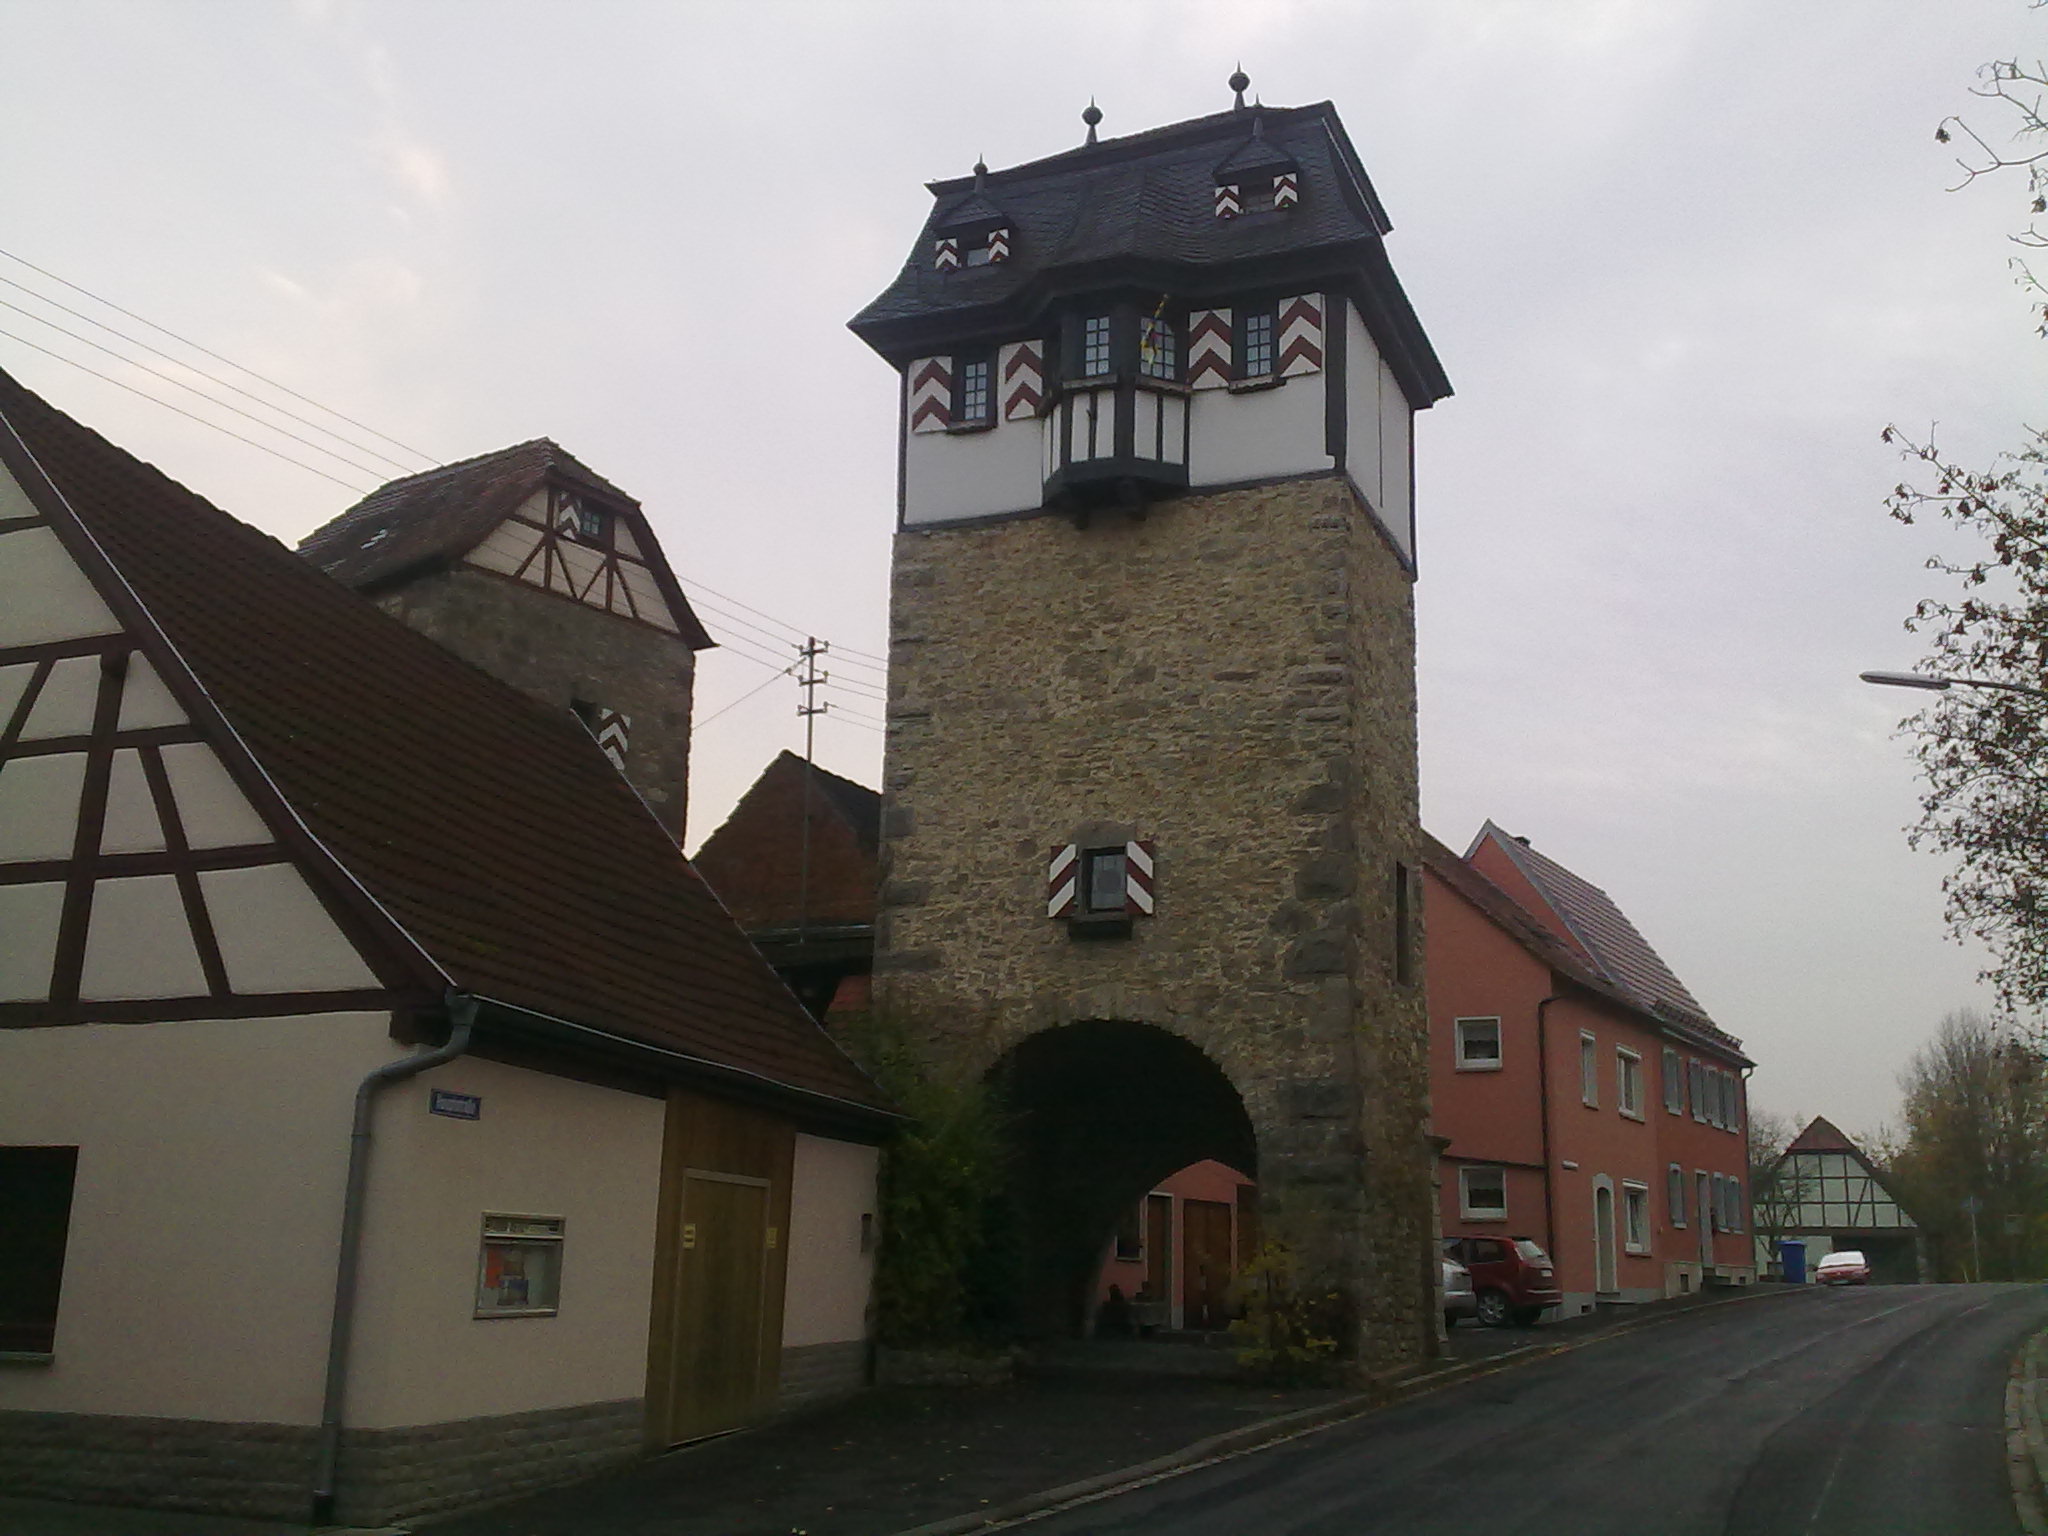 Hundheimer Tor in
Röttingen